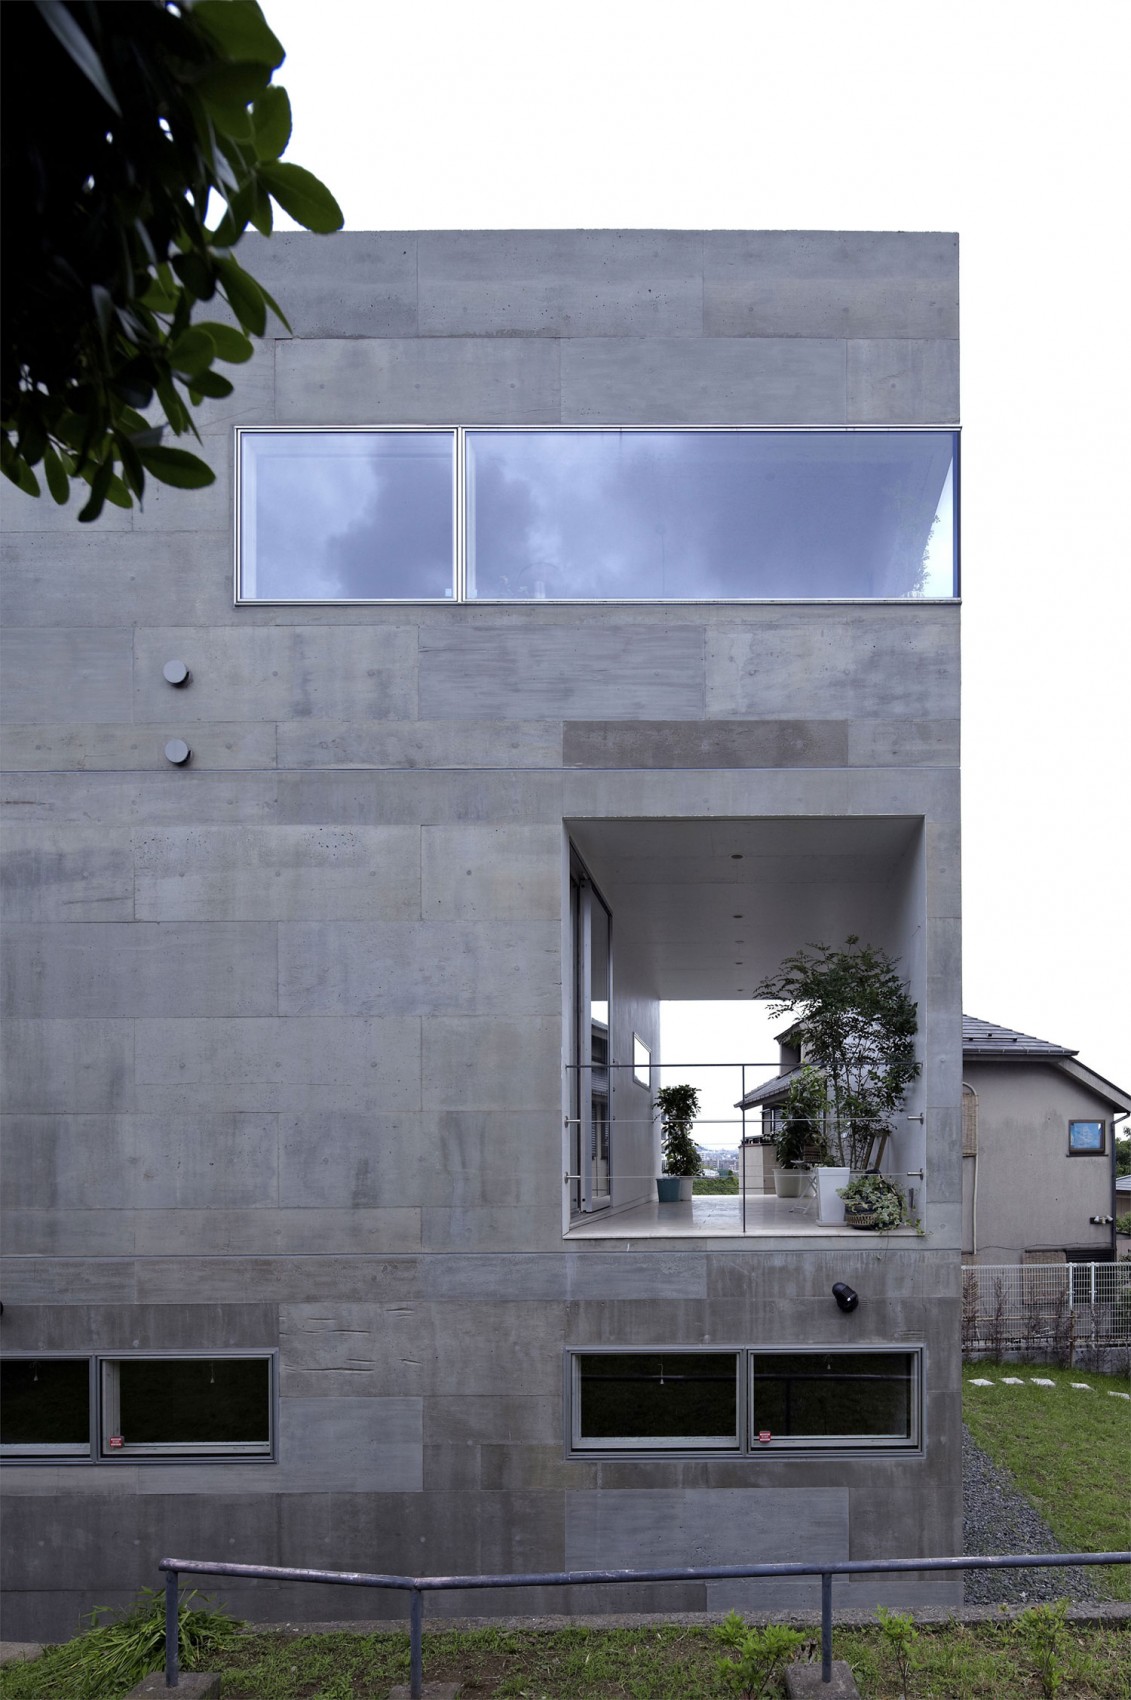 Дом ручной работы: проект nda от архитектурного конструкторского бюро № 555, йокогама, япония